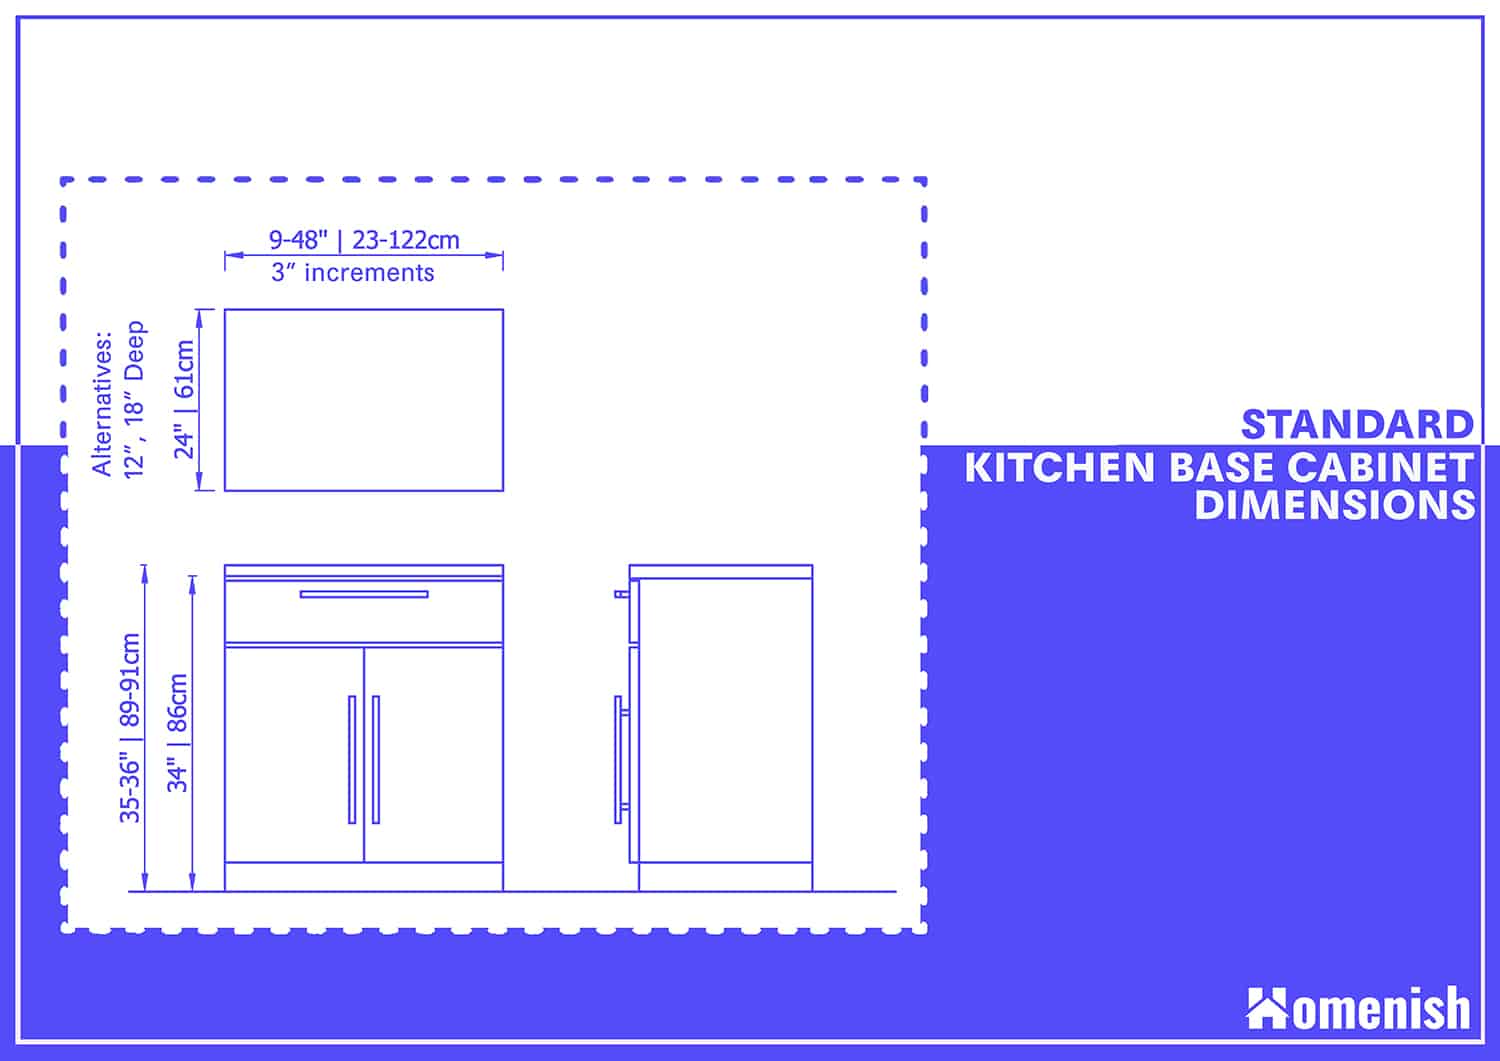 標準廚房底座櫃尺寸